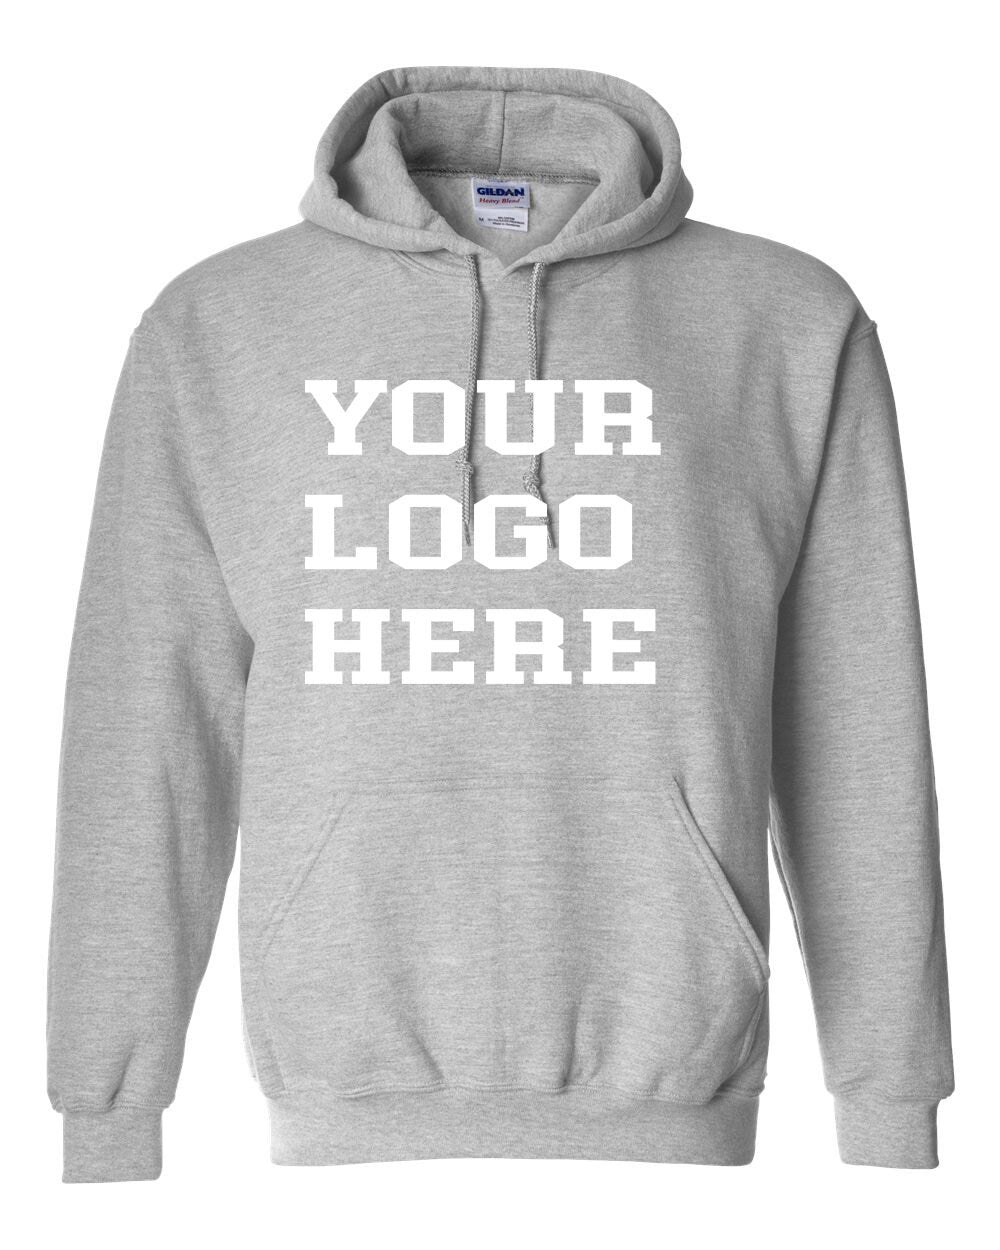 Gildan Hoodies Custom 1 Color Printed Hoodies|Personalized Hoodies|Custom Logo|Your Custom Logo| Bulk Order Options